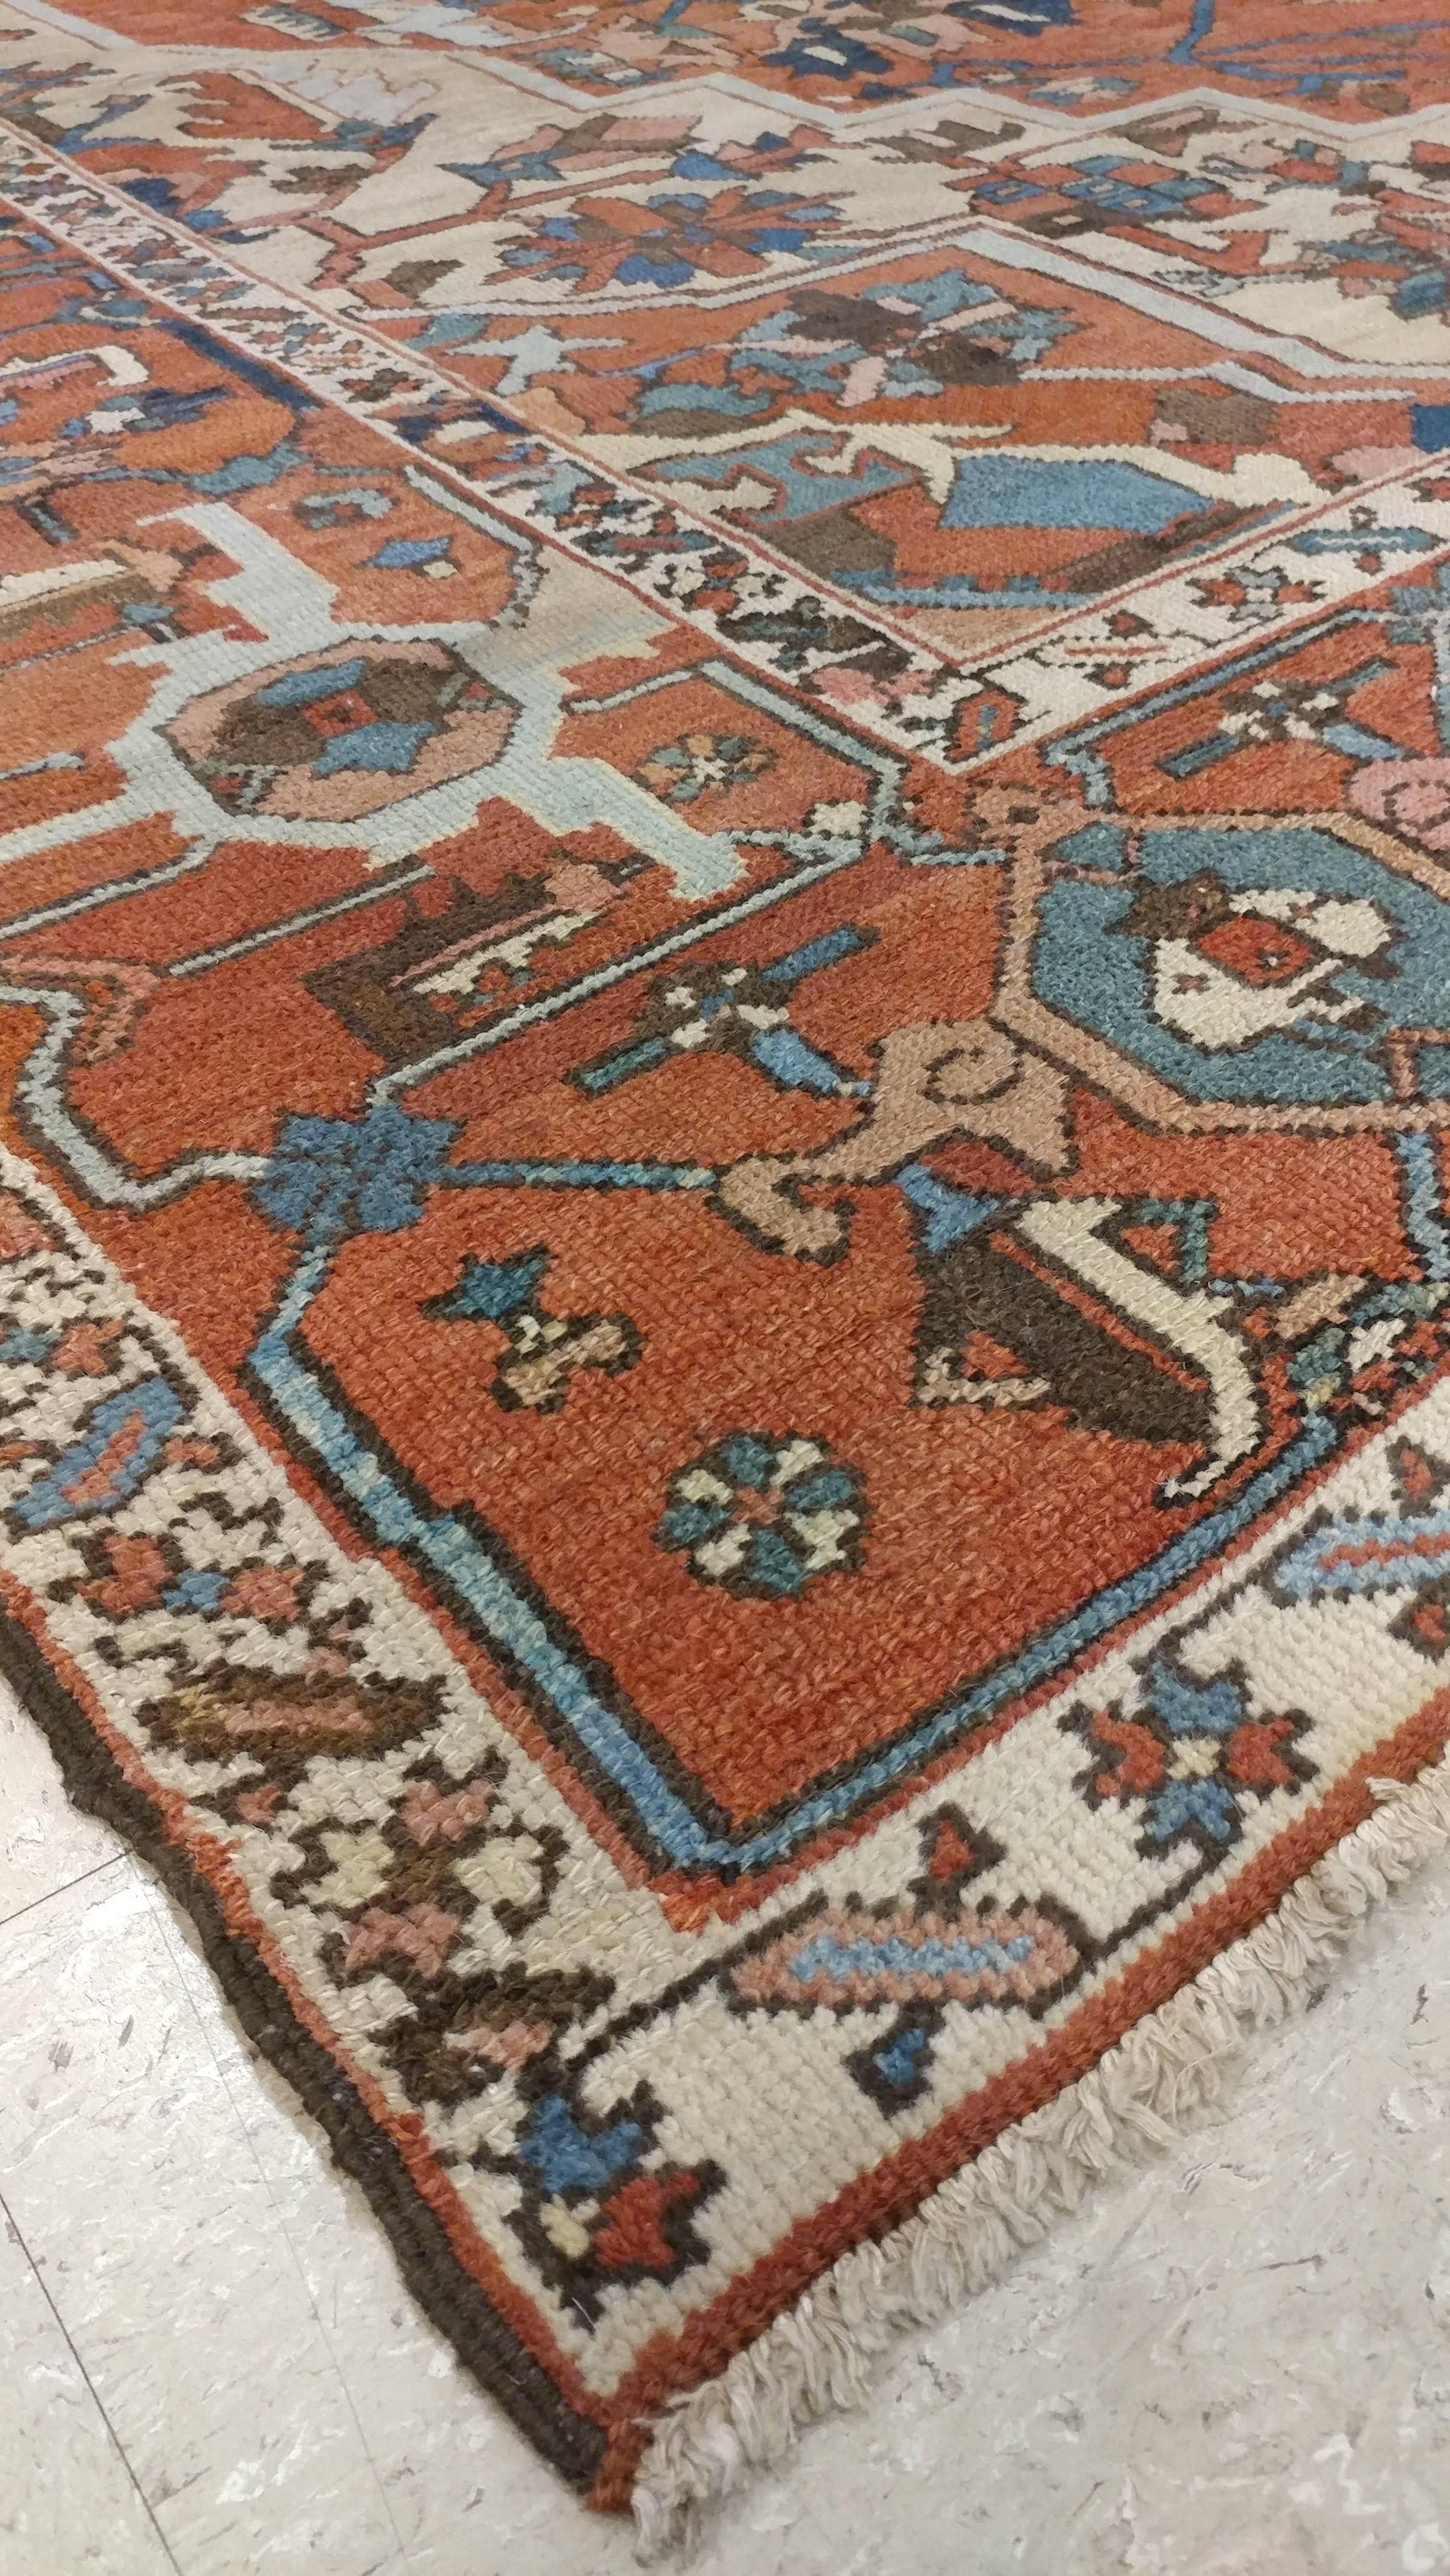 Antique Persian Handmade Wool Oriental Serapi Carpet, Rust, Gold, Light Blue 4